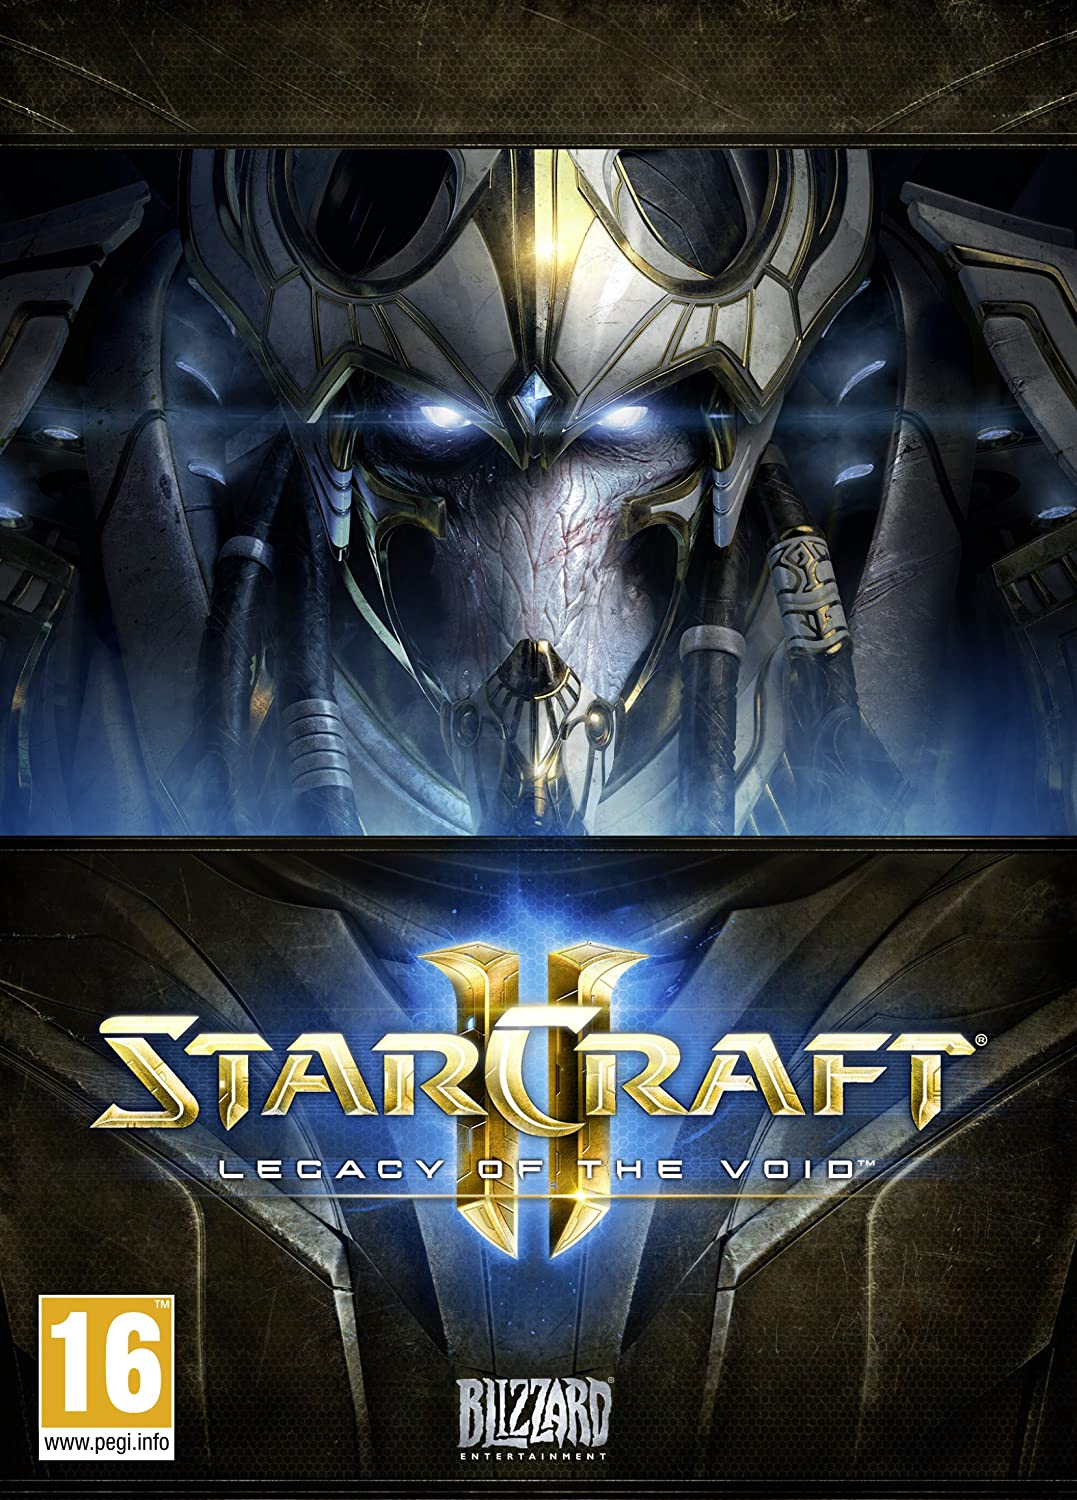 Starcraft 2 Free Download Mac Full Version